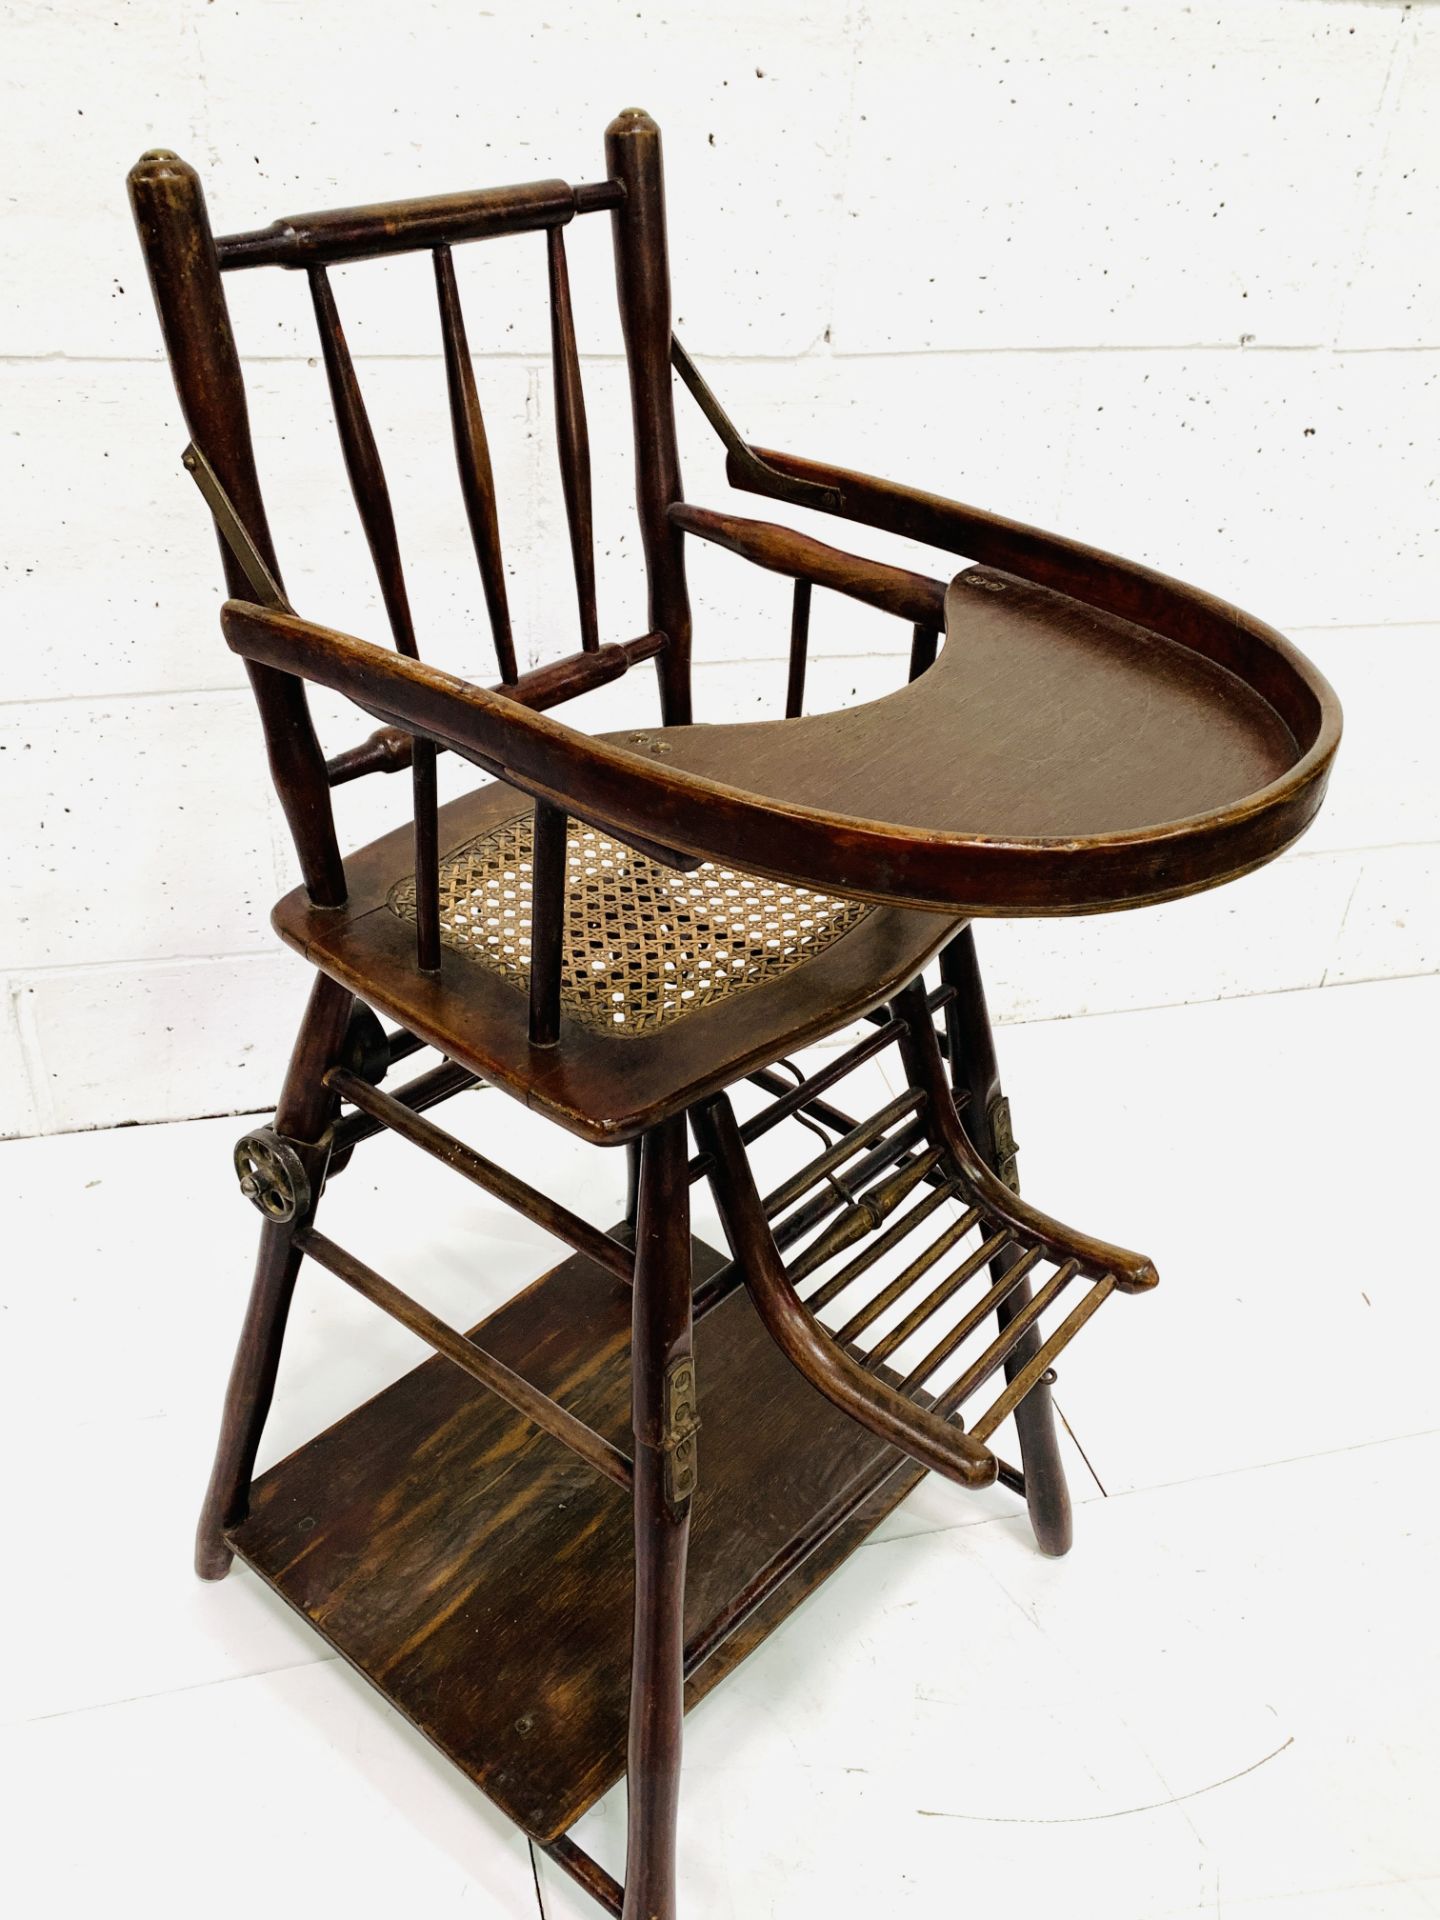 19th century Baumann & Co metamorphic high chair - Image 5 of 6